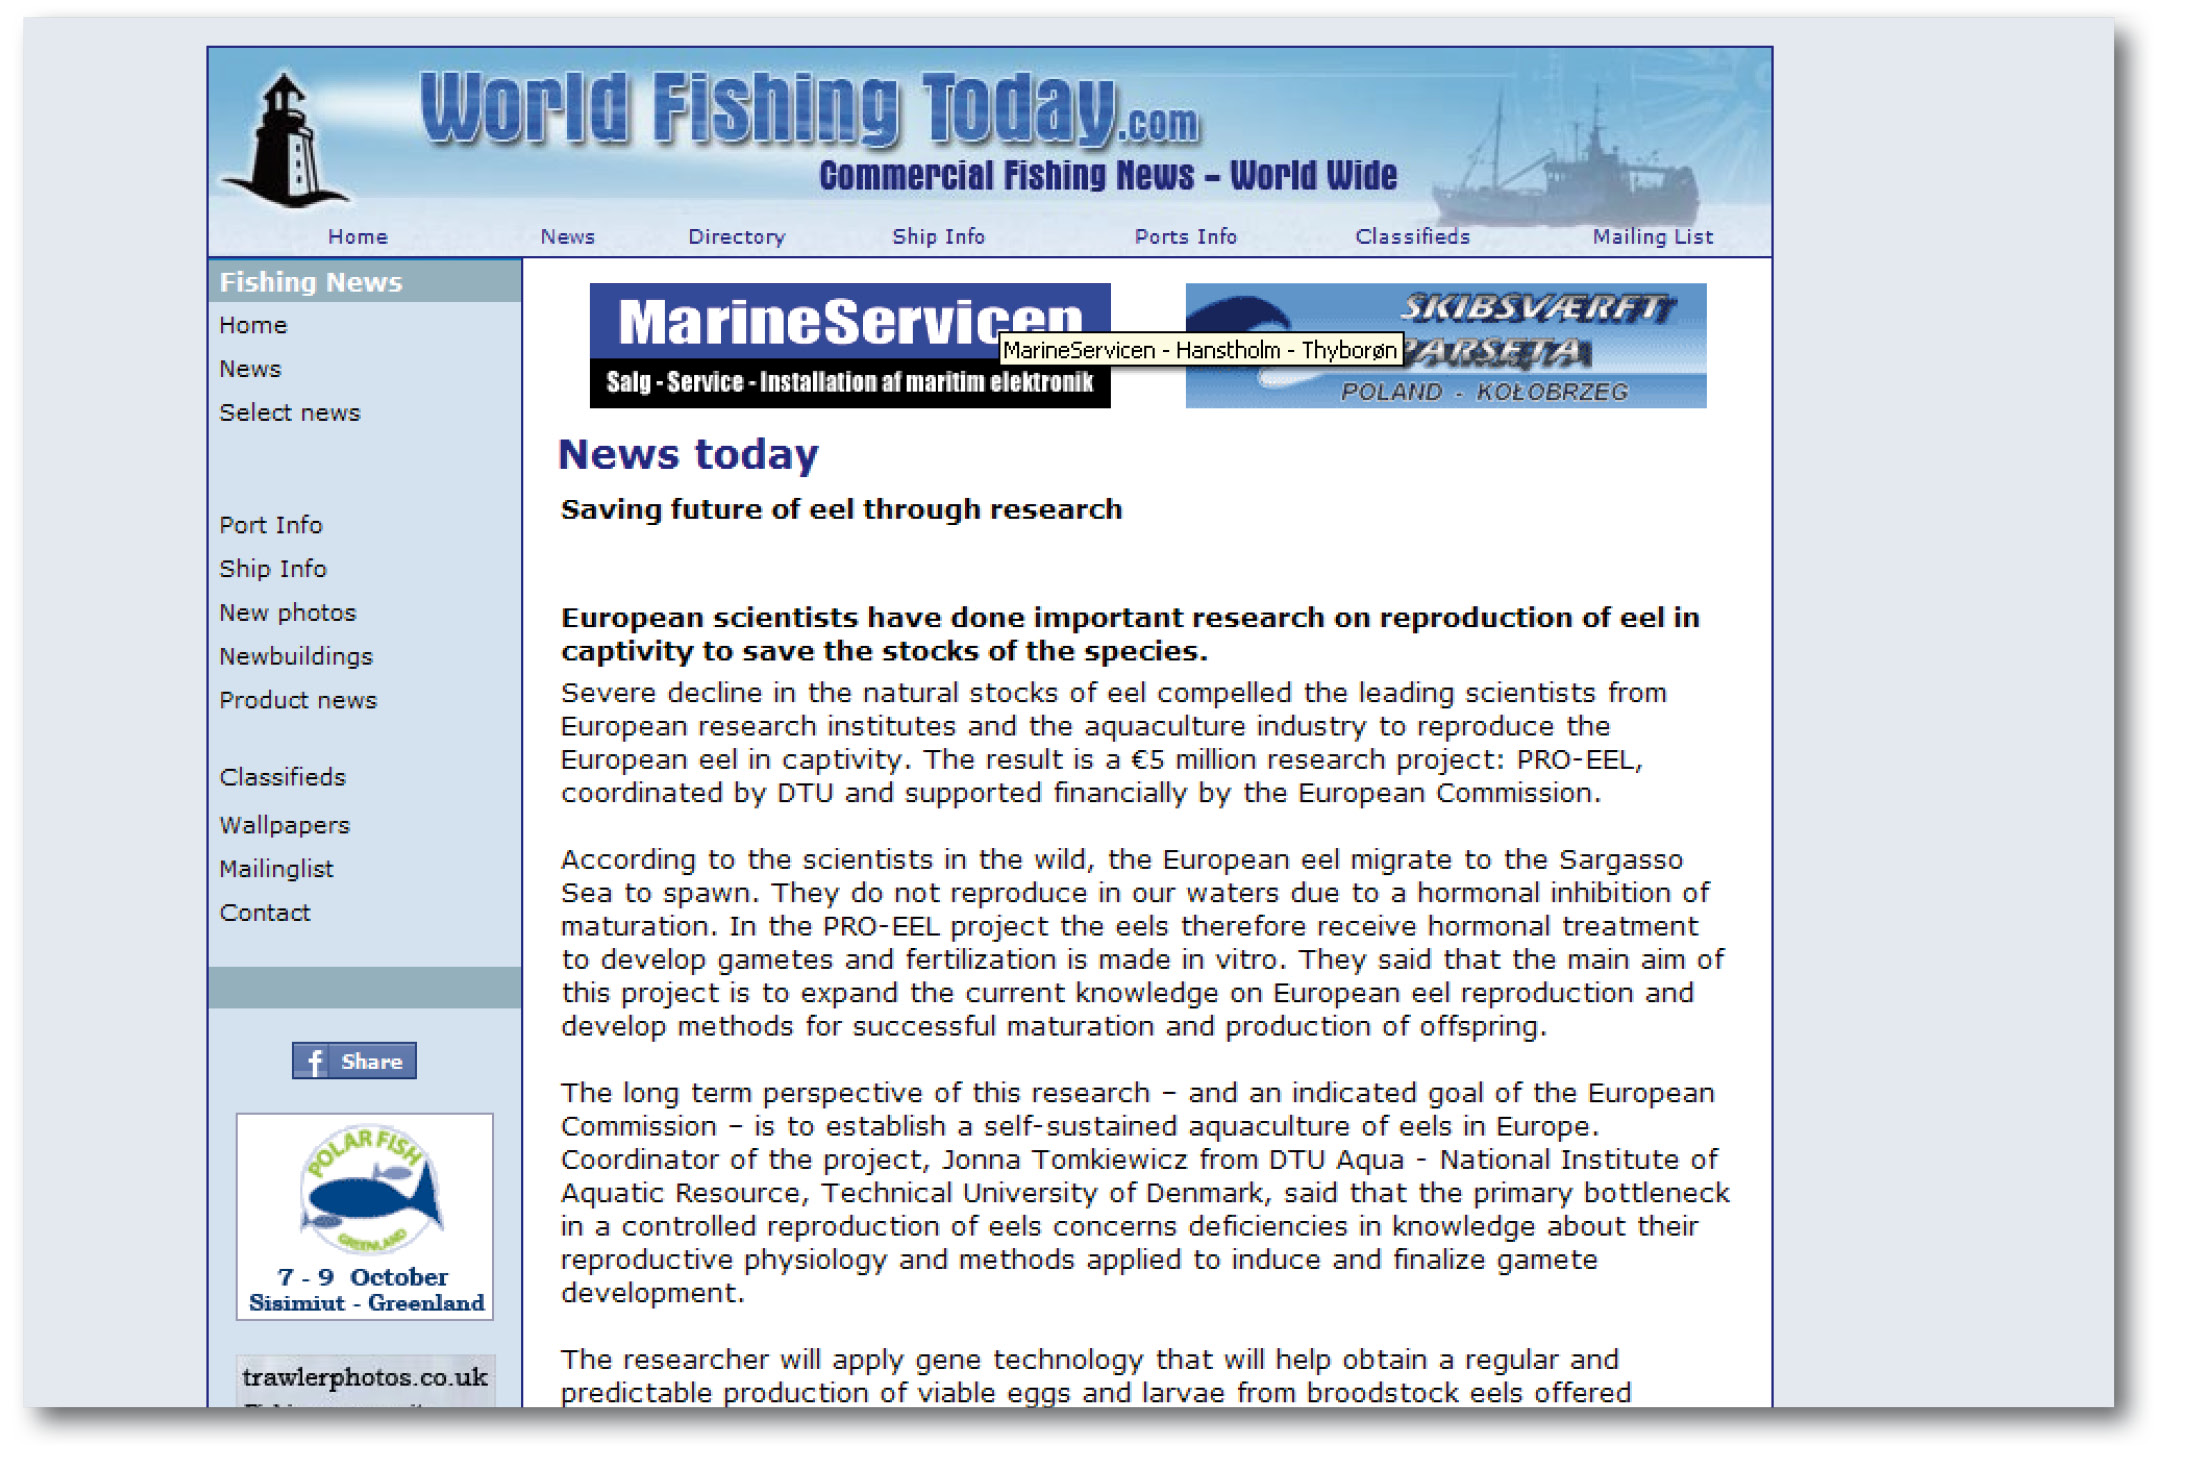 world fishing today 08072010.jpg